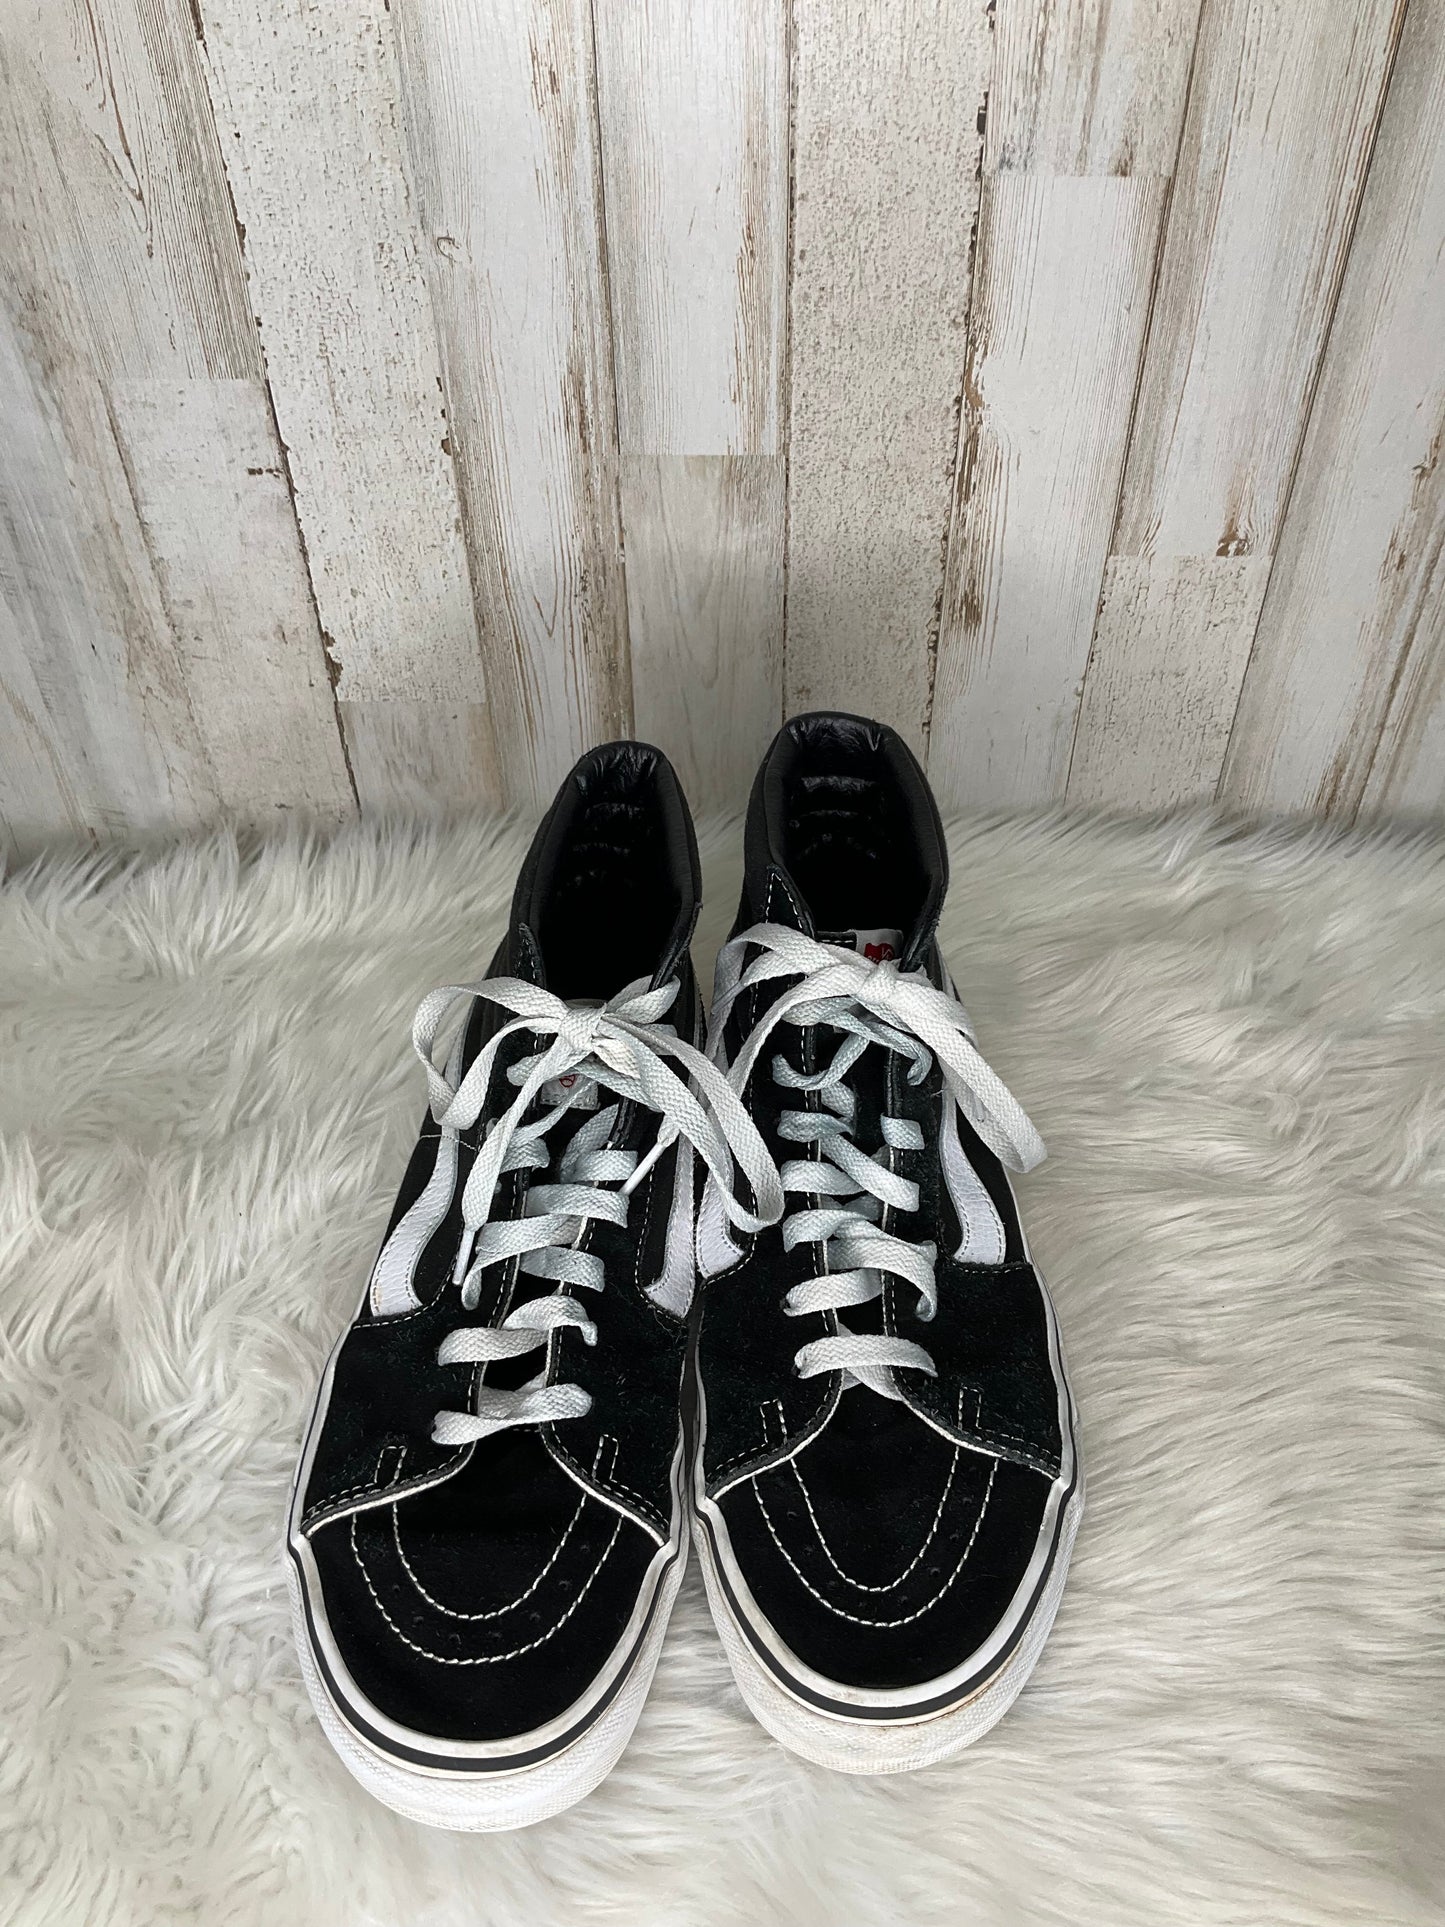 Black Shoes Sneakers Vans, Size 9.5